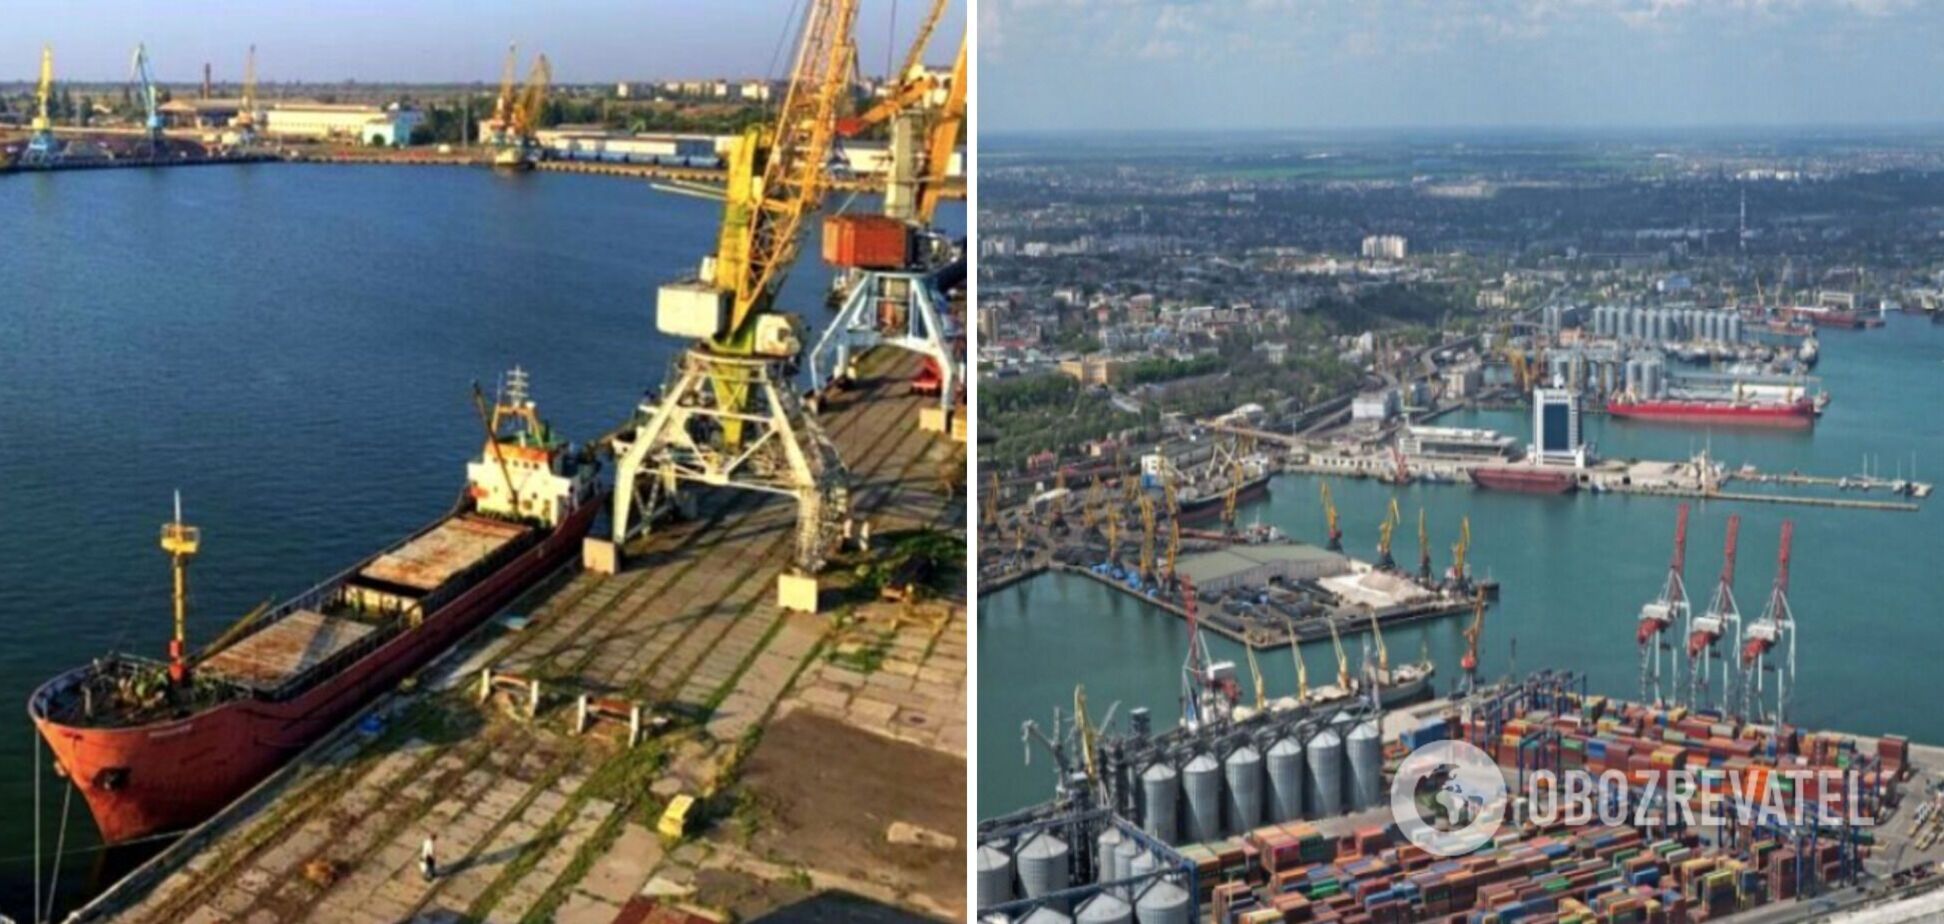 Розблокування портів відкриє шлях до відновлення експортного потенціалу України, – Мягков